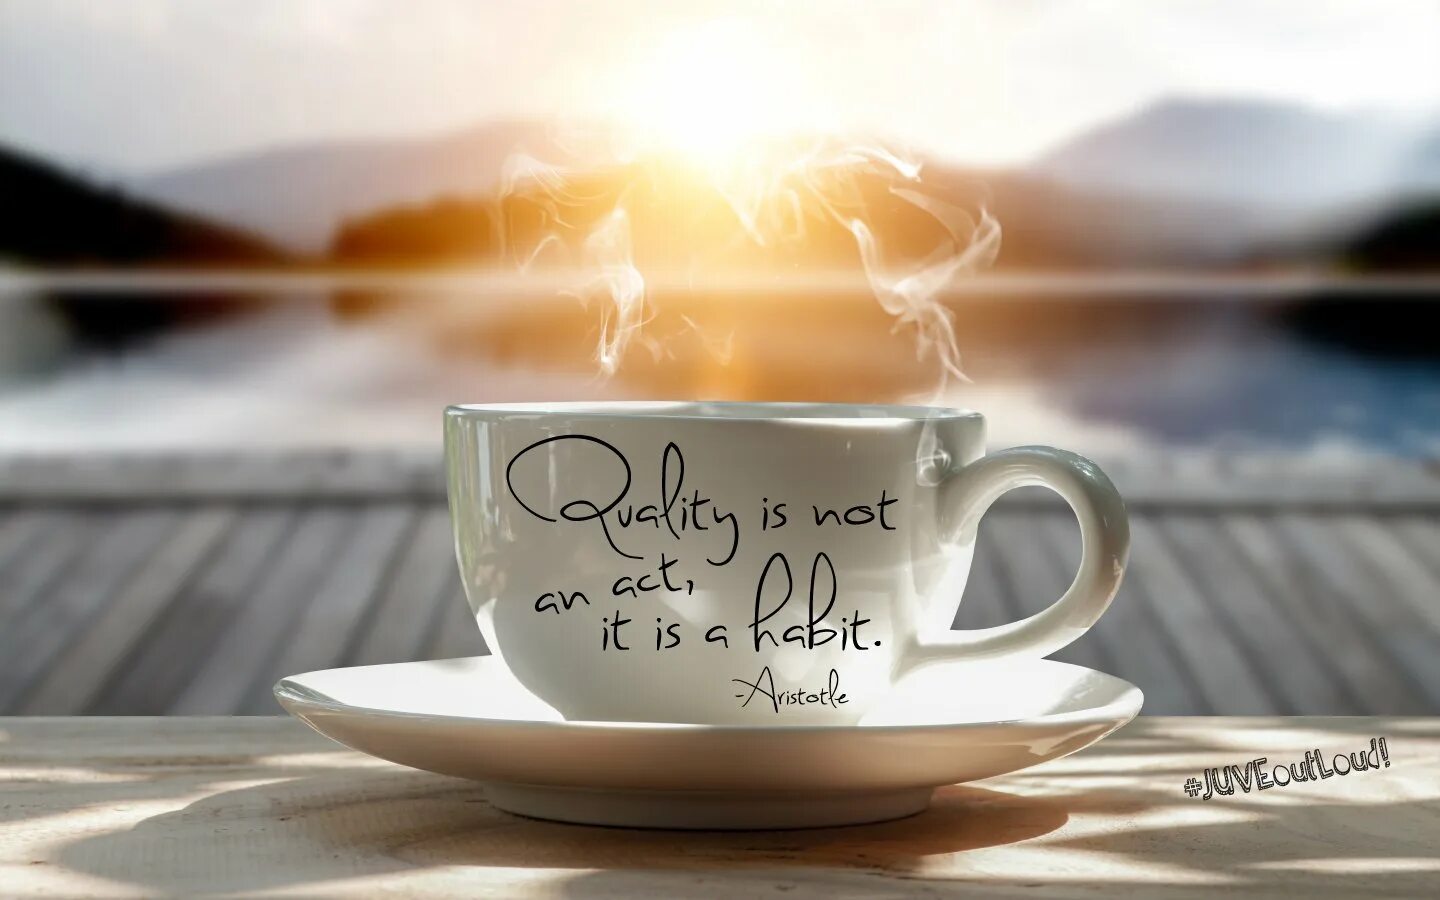 Утро ди. Кофе и море. Утро кофе солнце. Солнце в чашке кофе. Утро рассвет кофе.